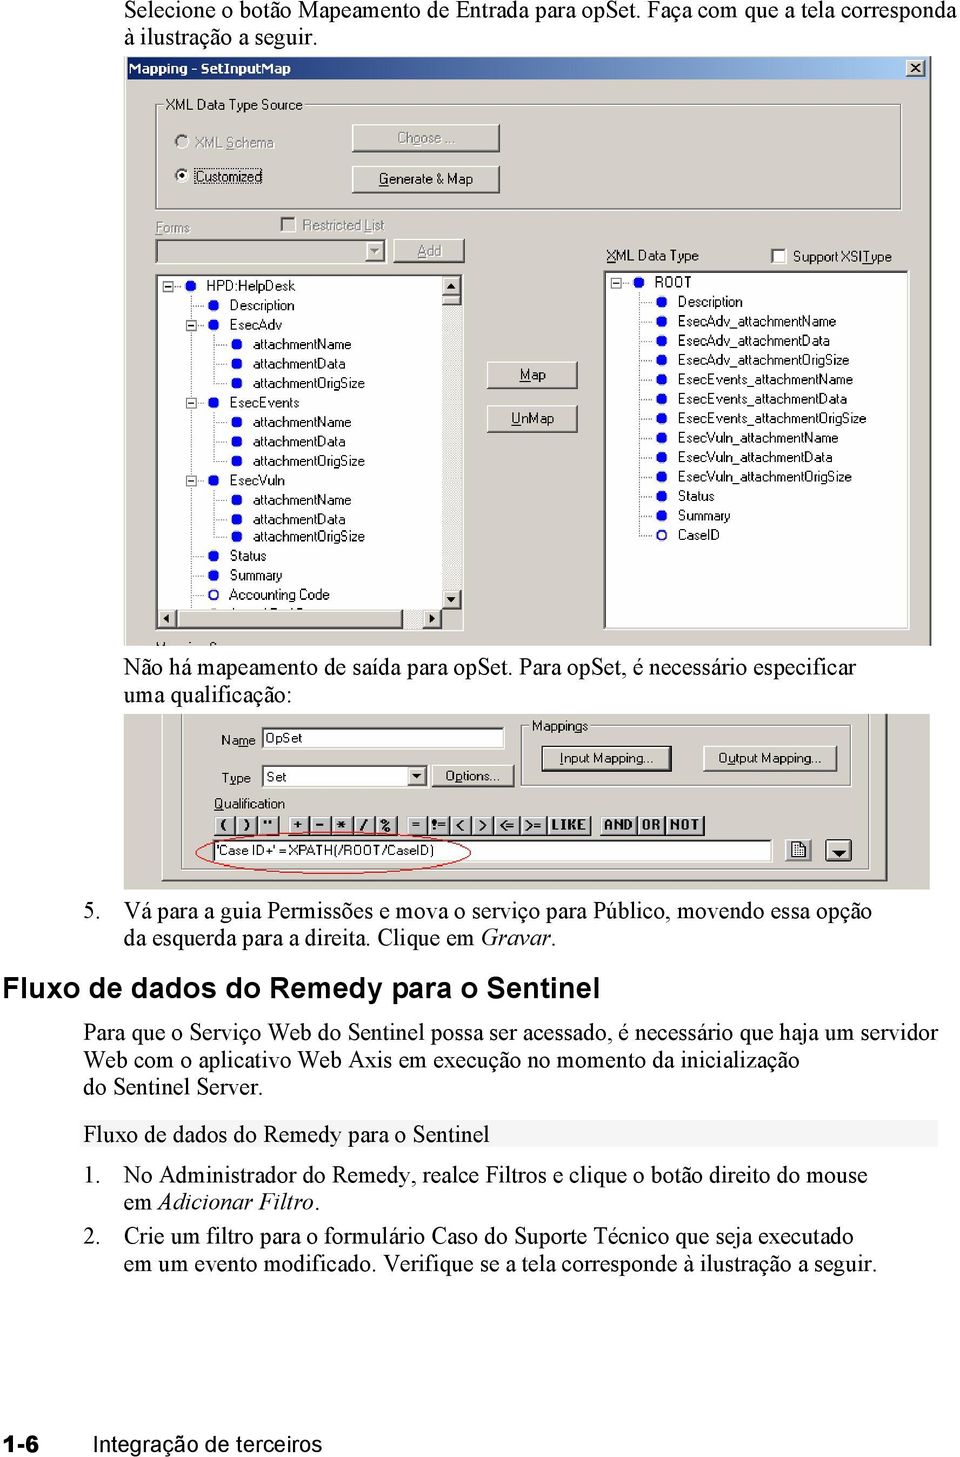 Fluxo de dados do Remedy para o Sentinel Para que o Serviço Web do Sentinel possa ser acessado, é necessário que haja um servidor Web com o aplicativo Web Axis em execução no momento da inicialização